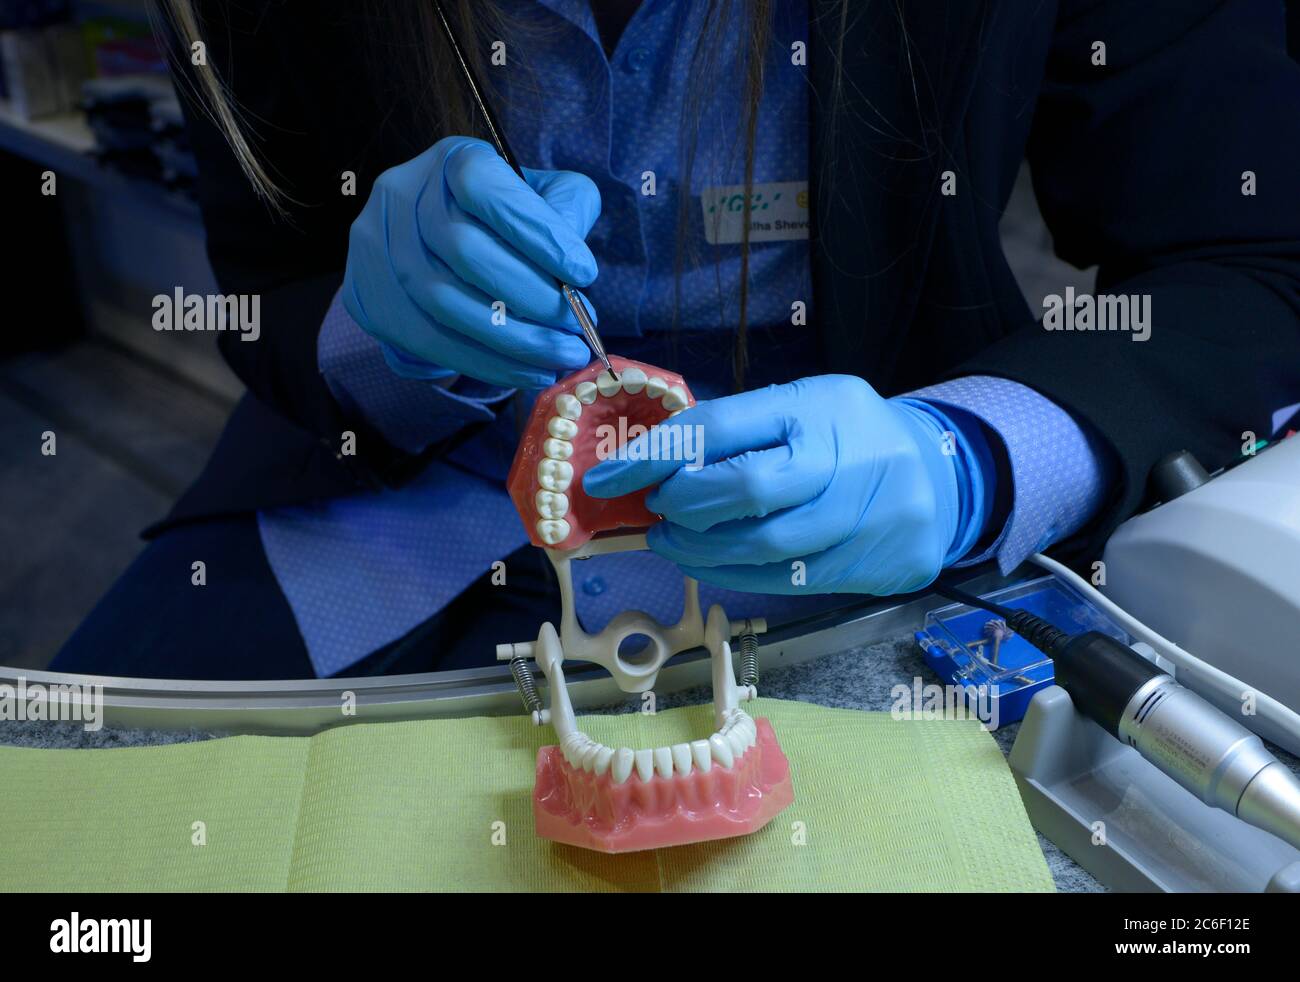 Femme mains dans des gants bleus tenant la brosse dentaire au-dessus de la typographie, moulage en plastique des mâchoires et des dents humaines, montrant la manière de traitement dentaire Banque D'Images